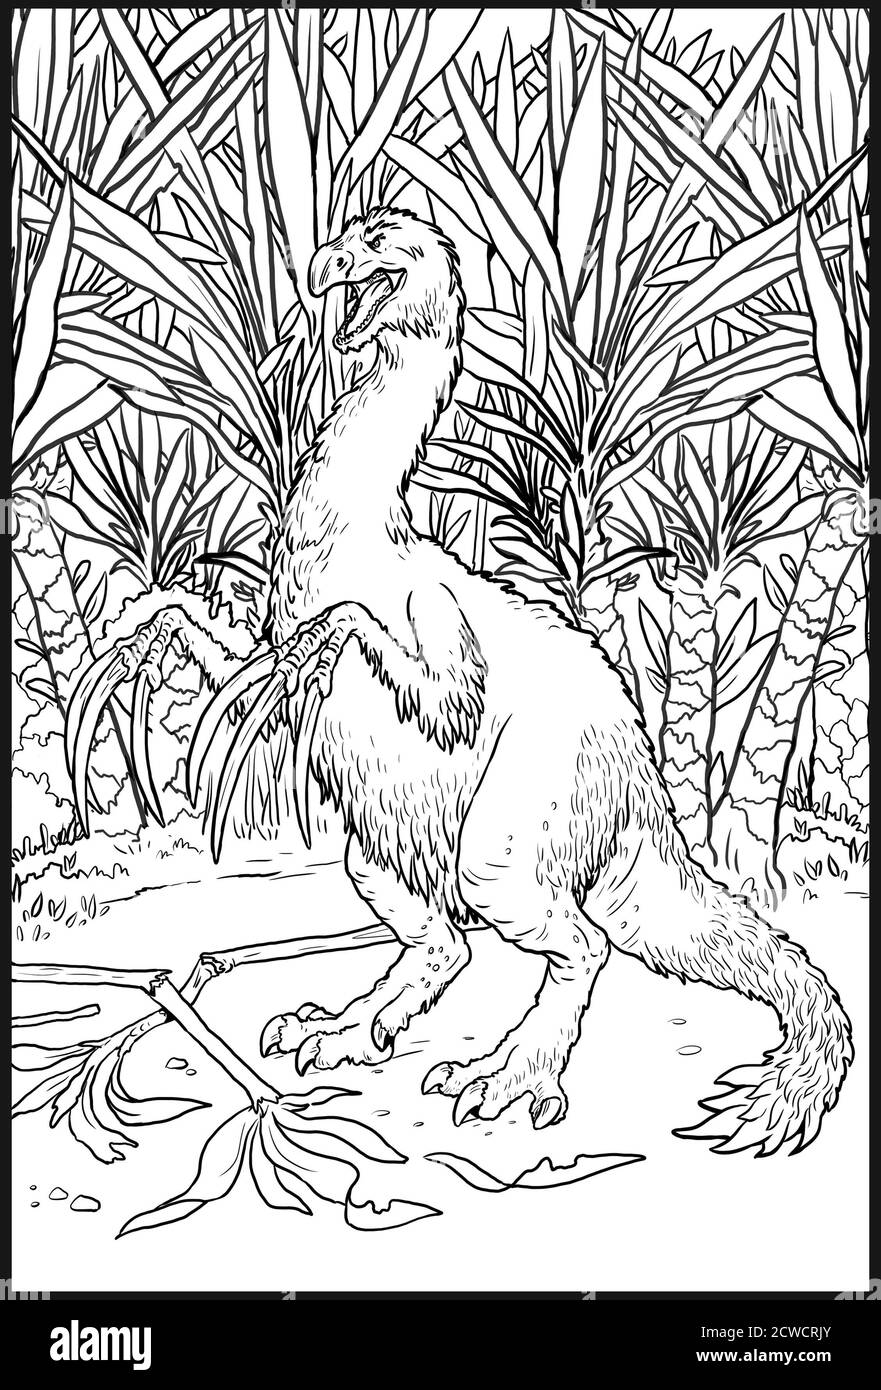 Dinosauro erbivoro - Therizinosauro. Dinosauro gigantesco con grandi artigli. Pagina da colorare per bambini. Foto Stock